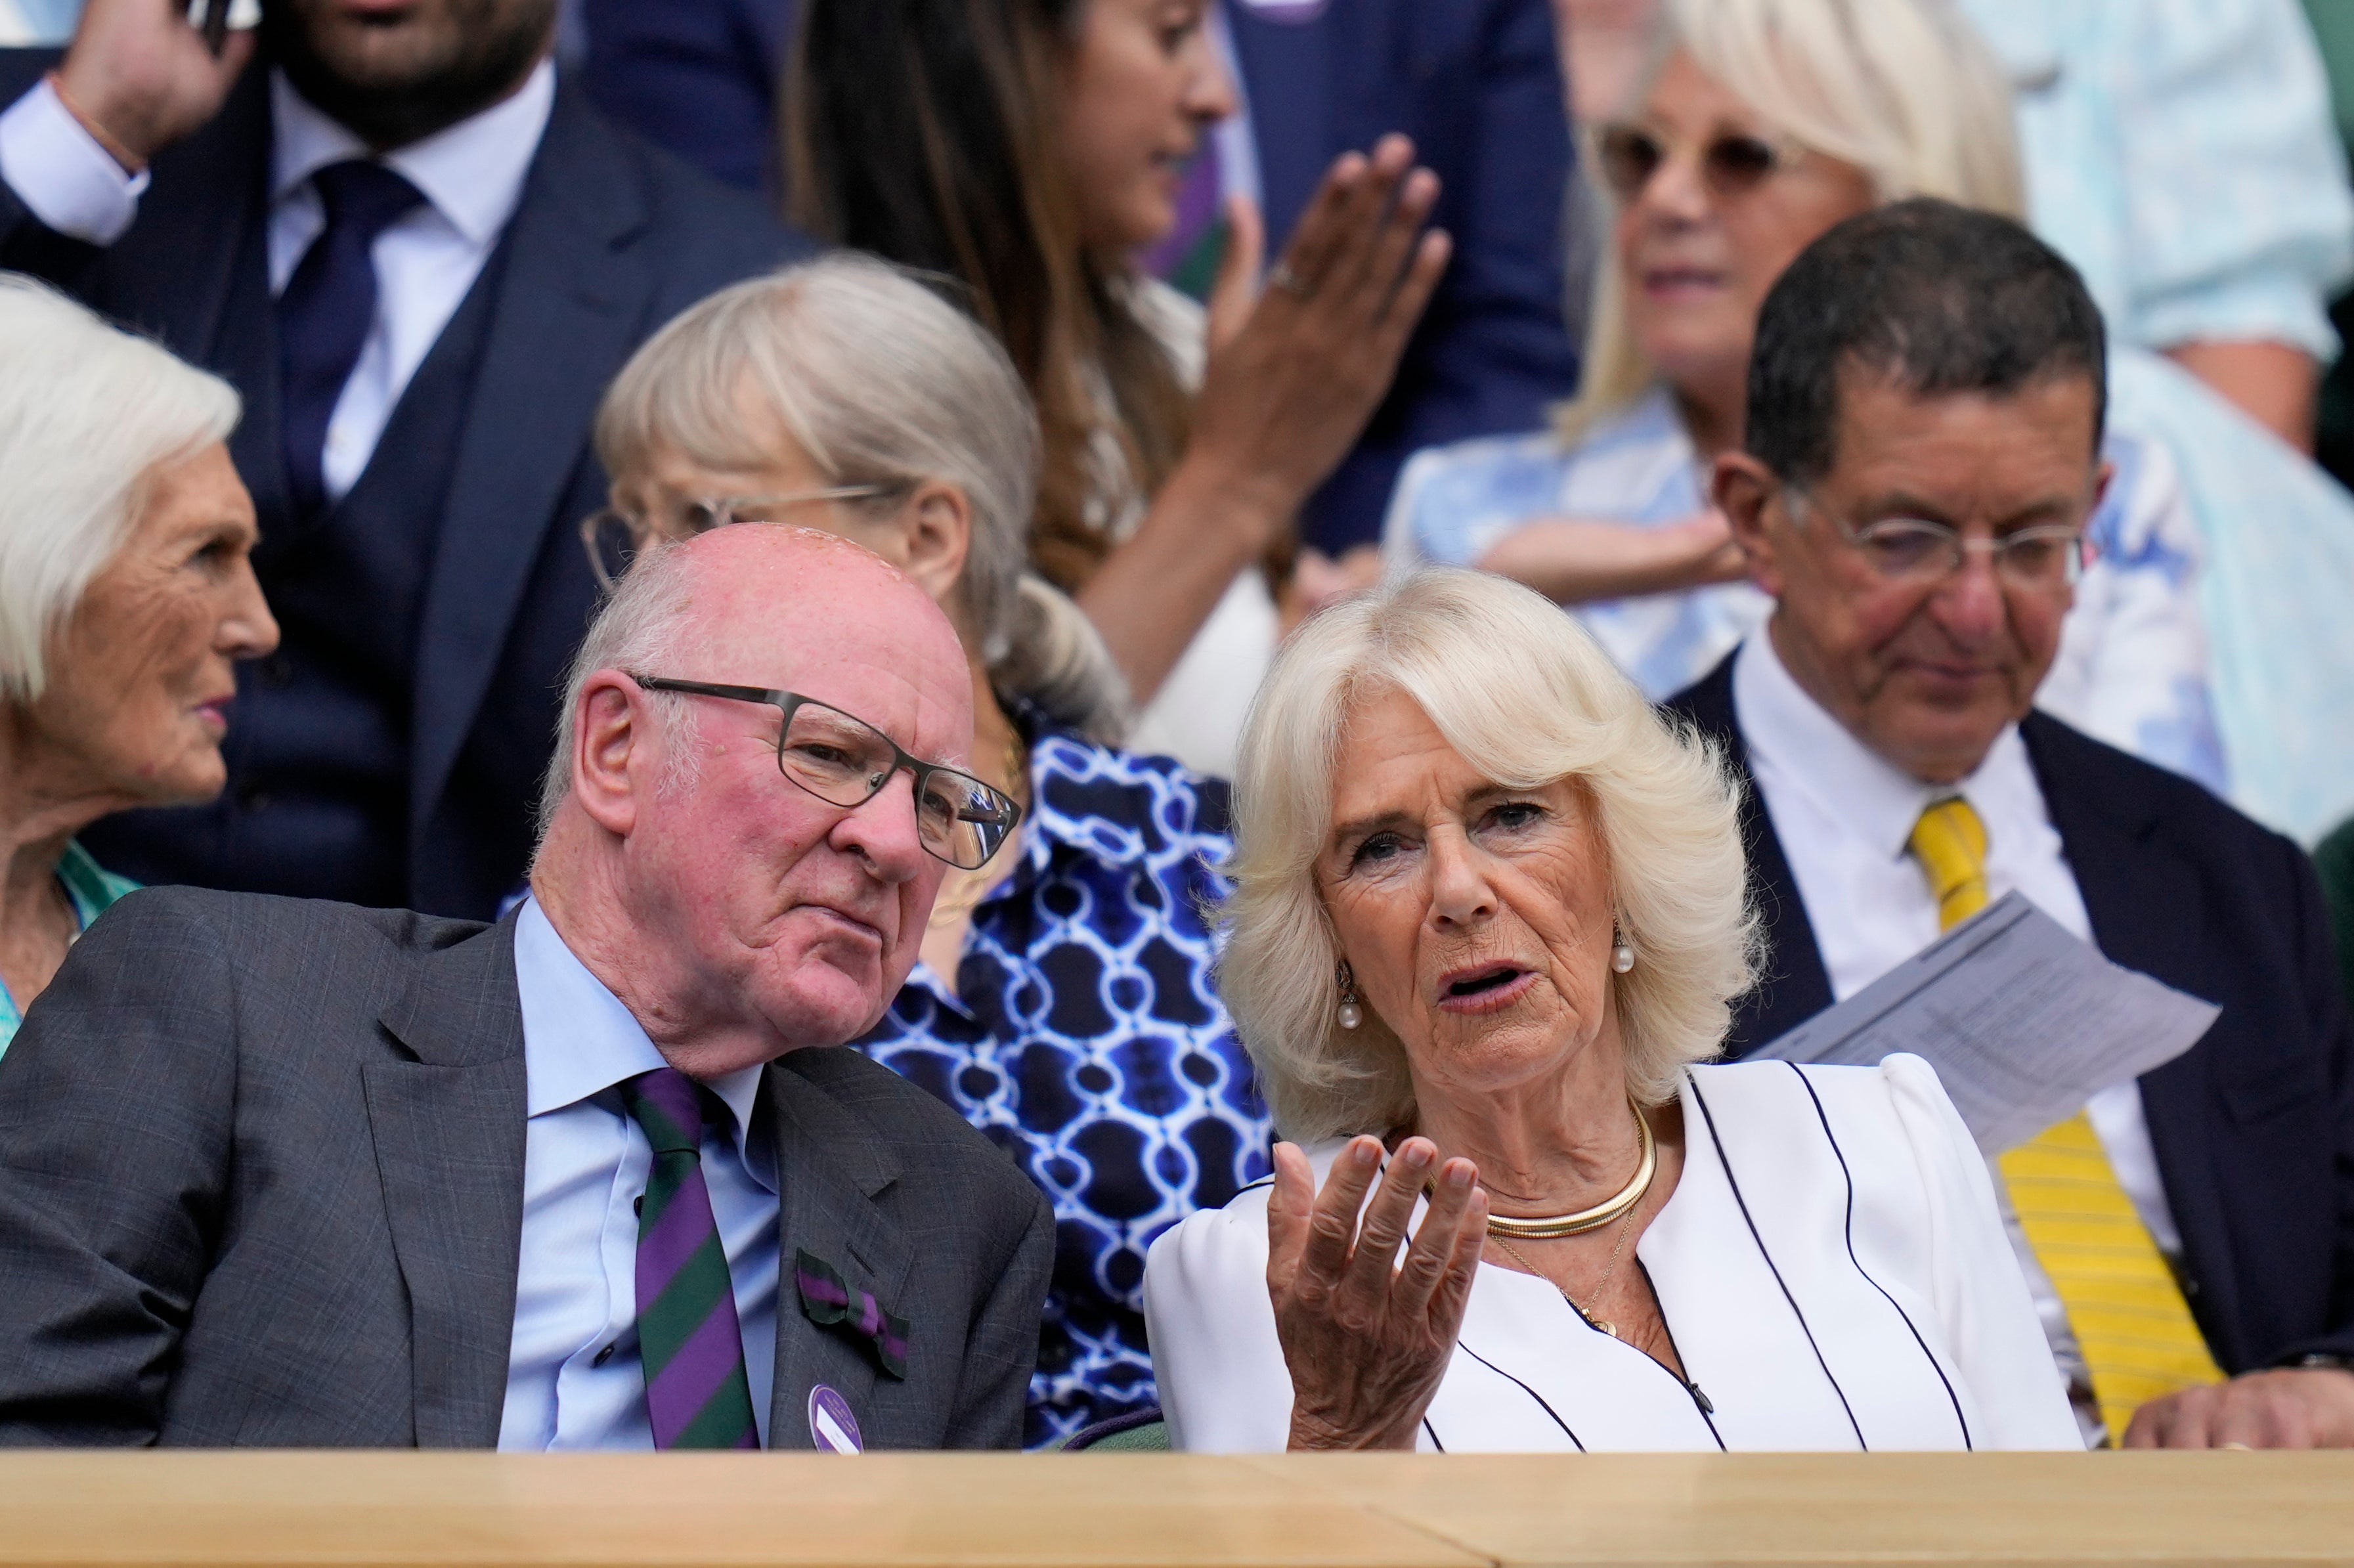 Queen Camilla arrives at Wimbledon